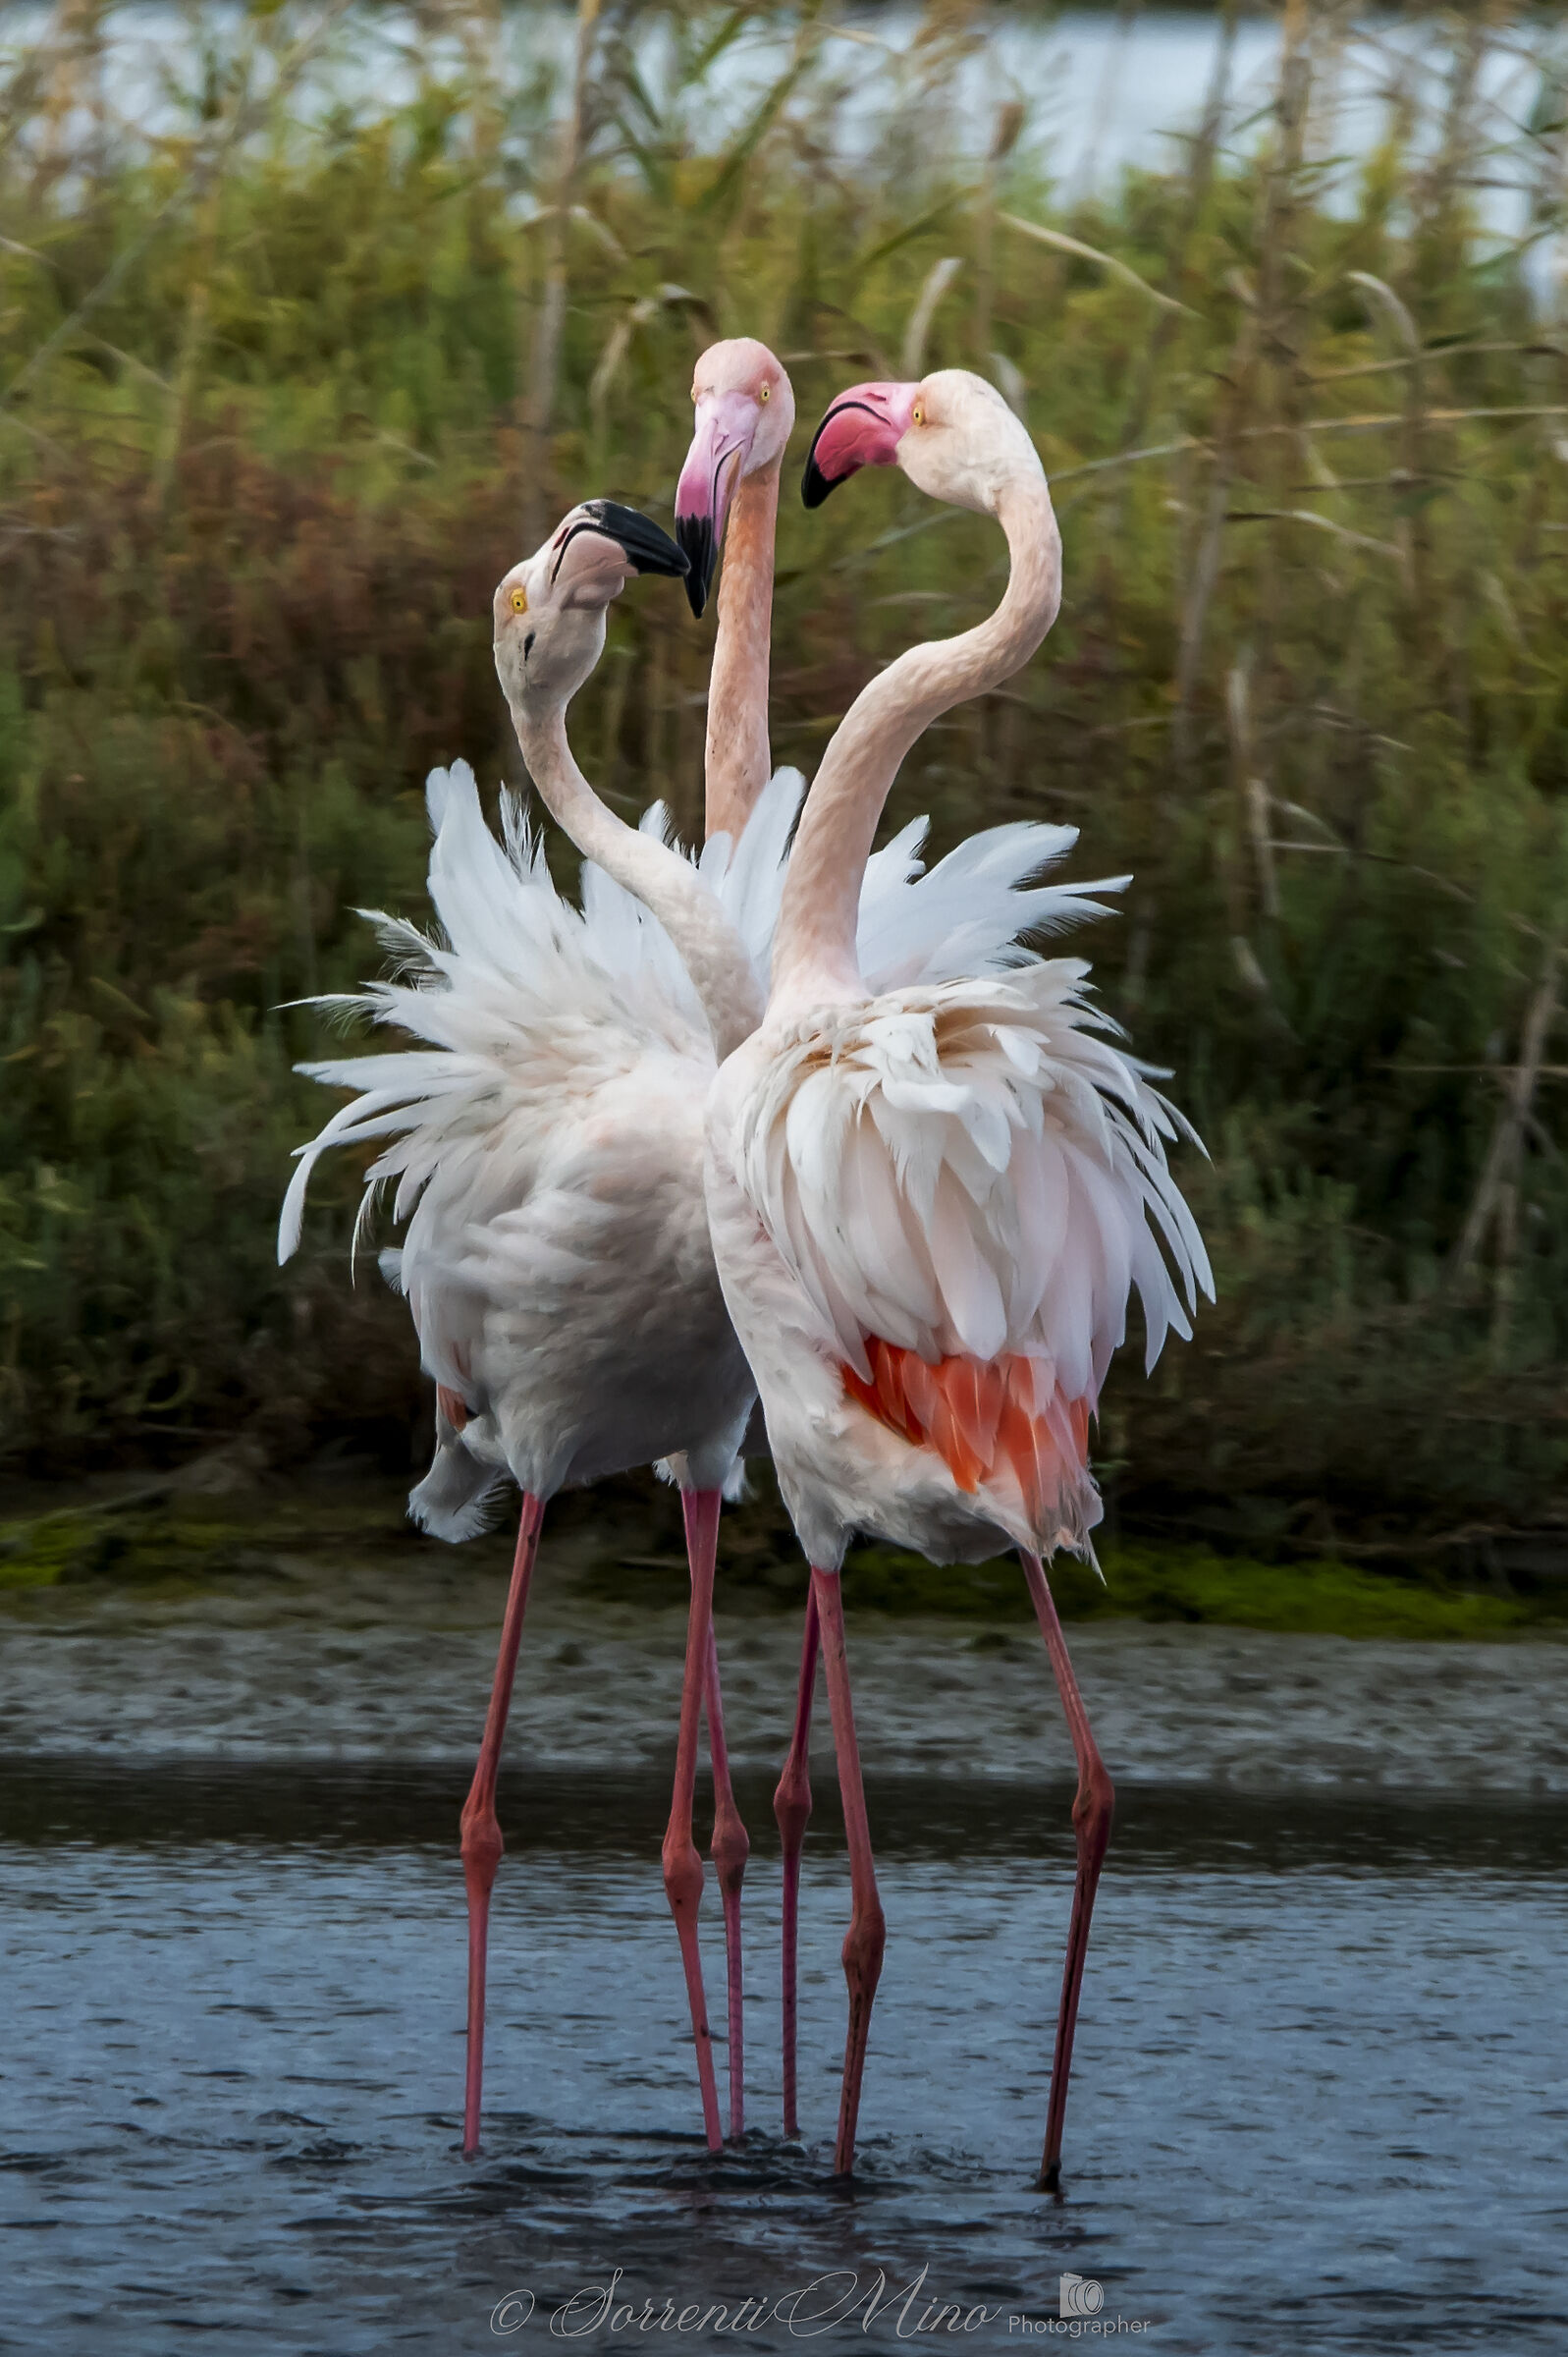 Squabble between Flamingos!...